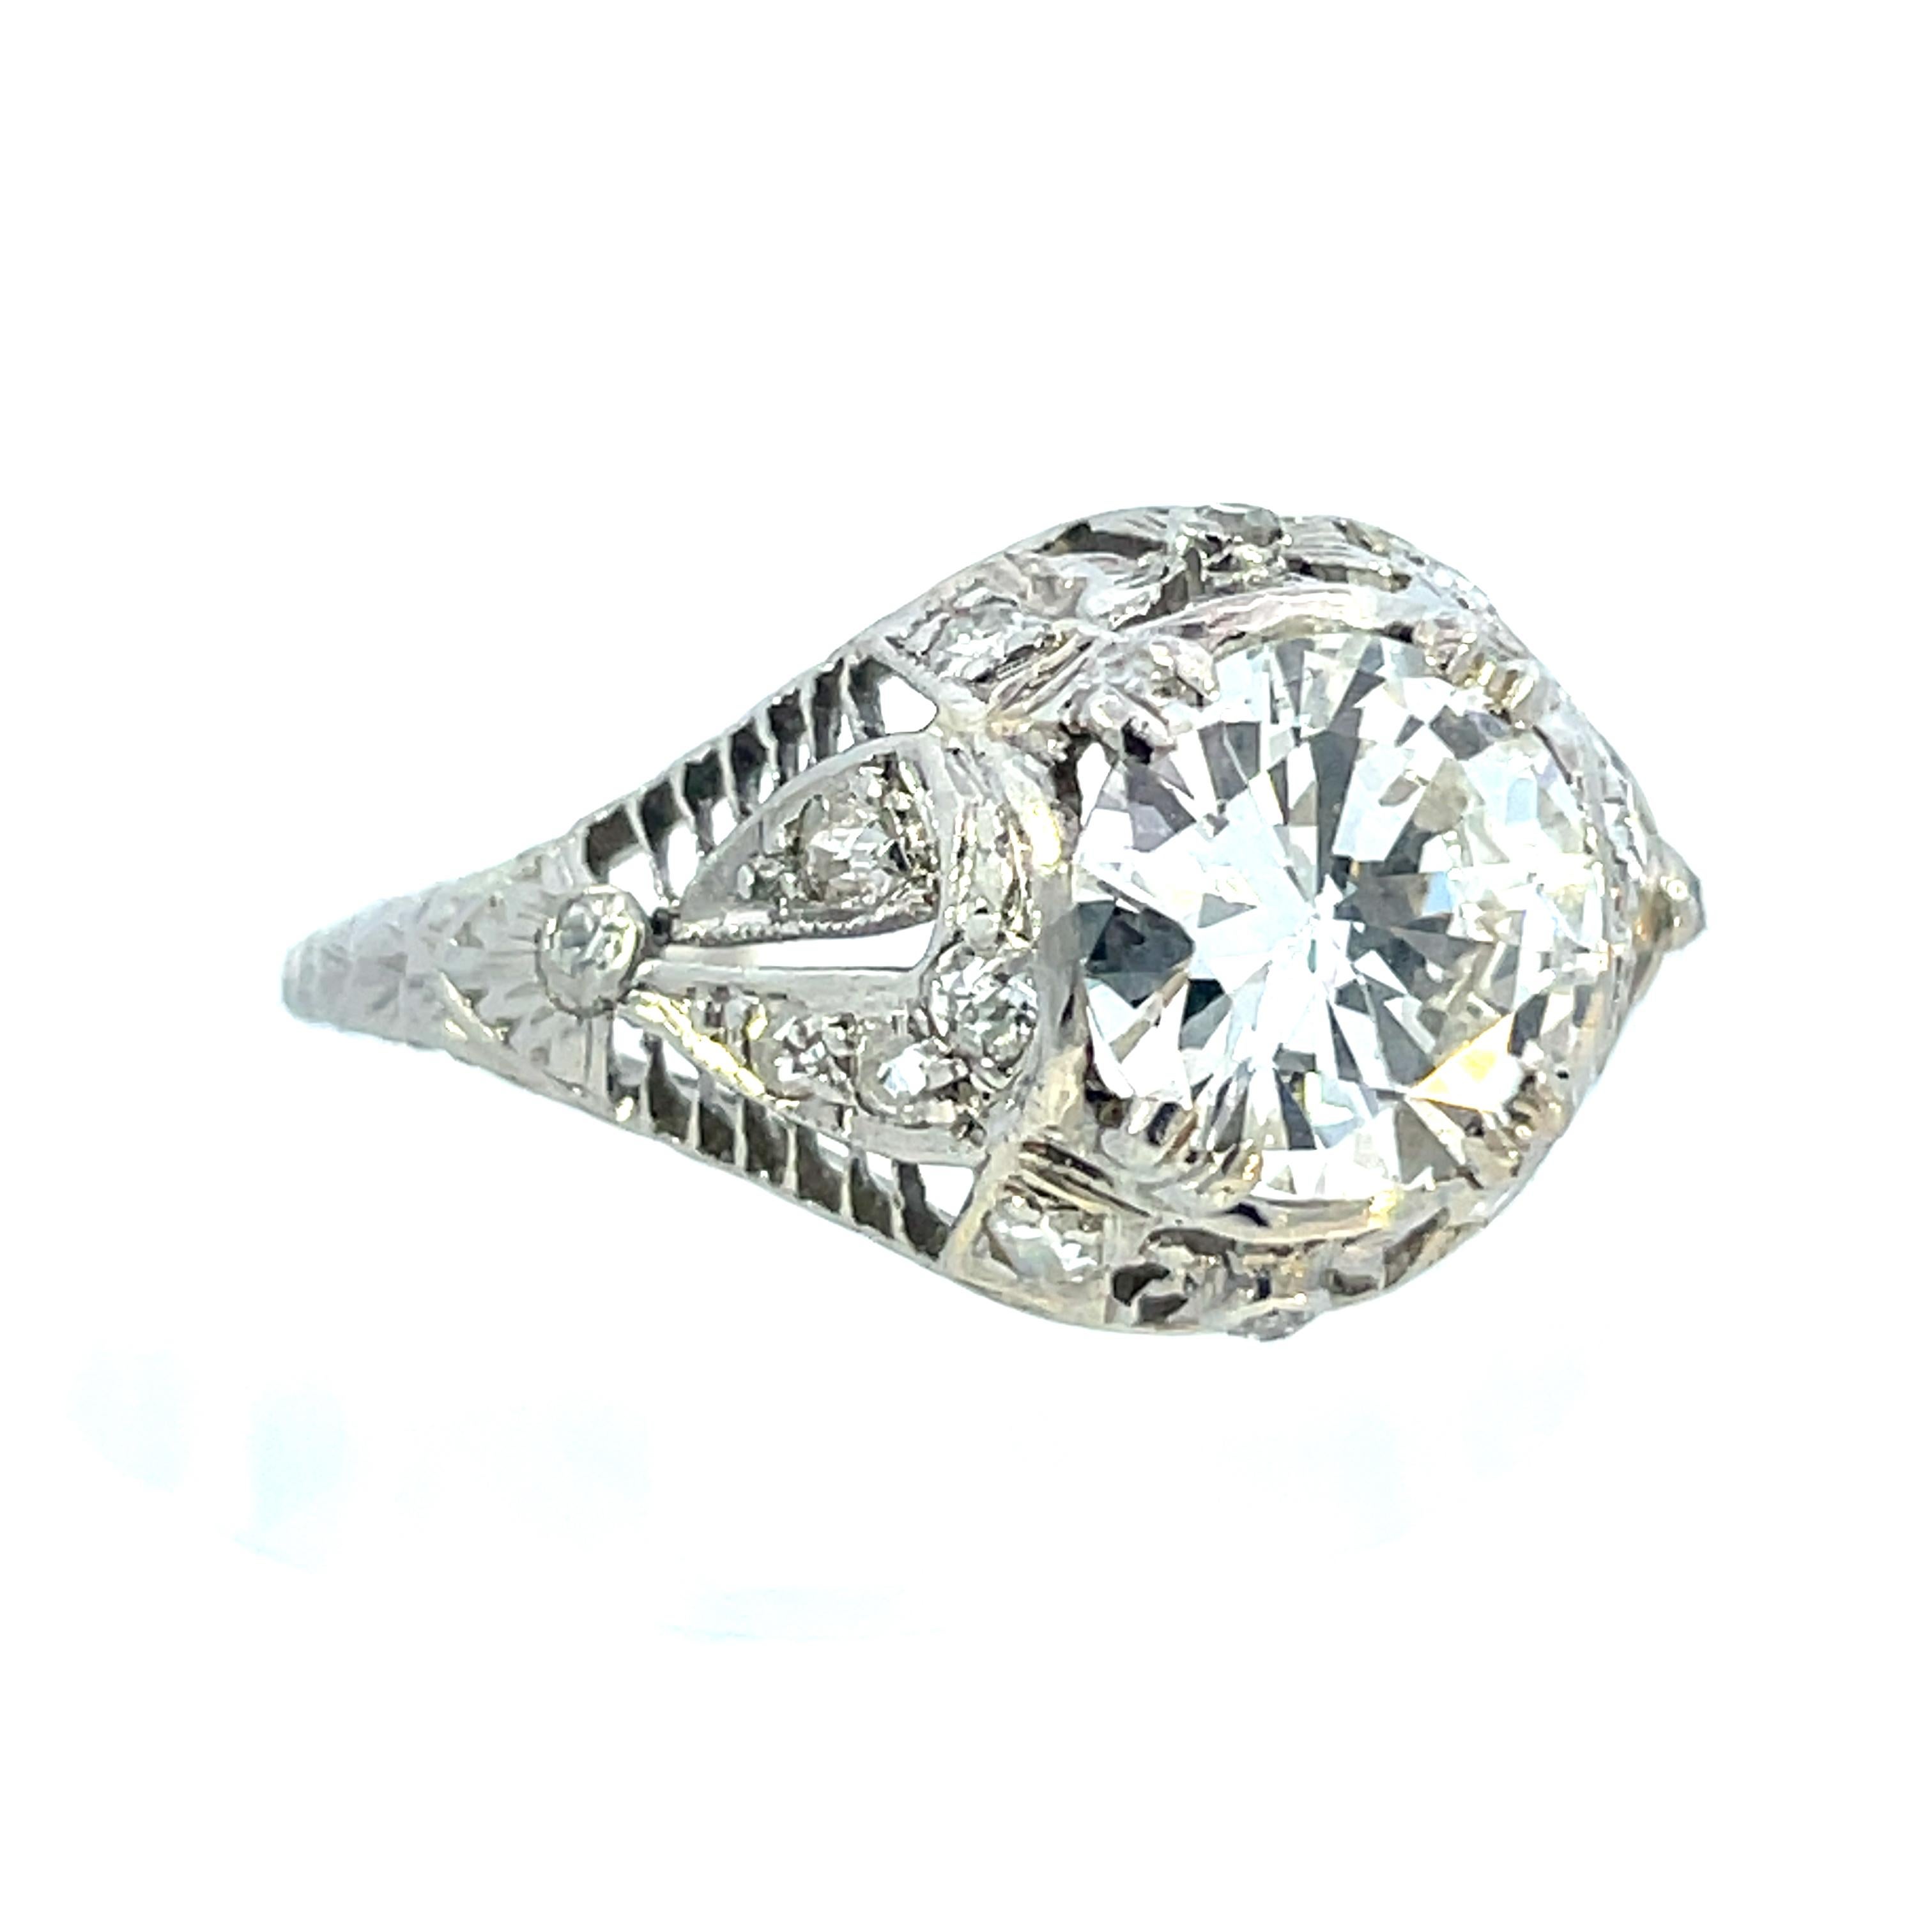 Dieser Diamantring aus den 1910er Jahren fängt mit seiner filigranen Arbeit und seinem zarten Design die Essenz der edwardianischen Ära ein. Das aus Platin gefertigte Metall ist im Gegensatz zu Gold für immer weiß. Der natürliche weiße Glanz von